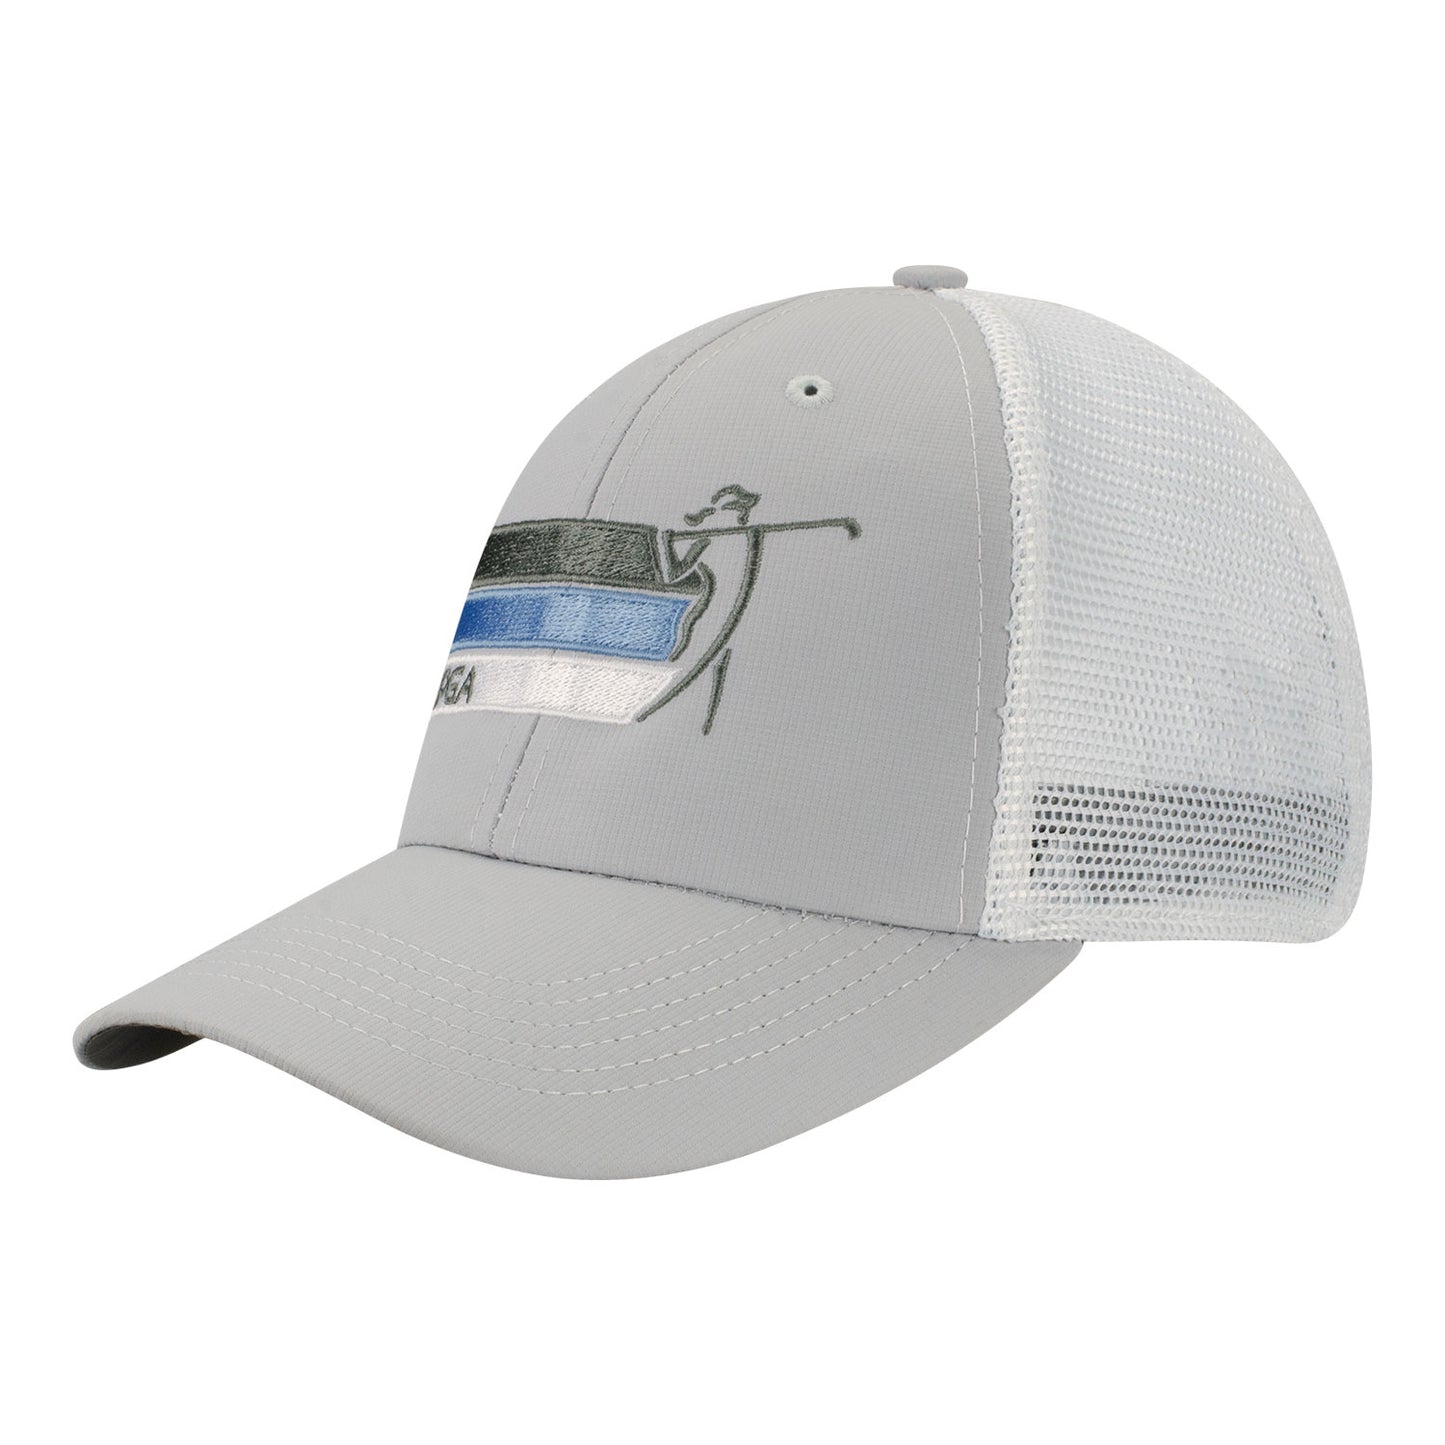 Imperial LPGA Men's Mesh Back Hat in Fog - Angled Left Side View